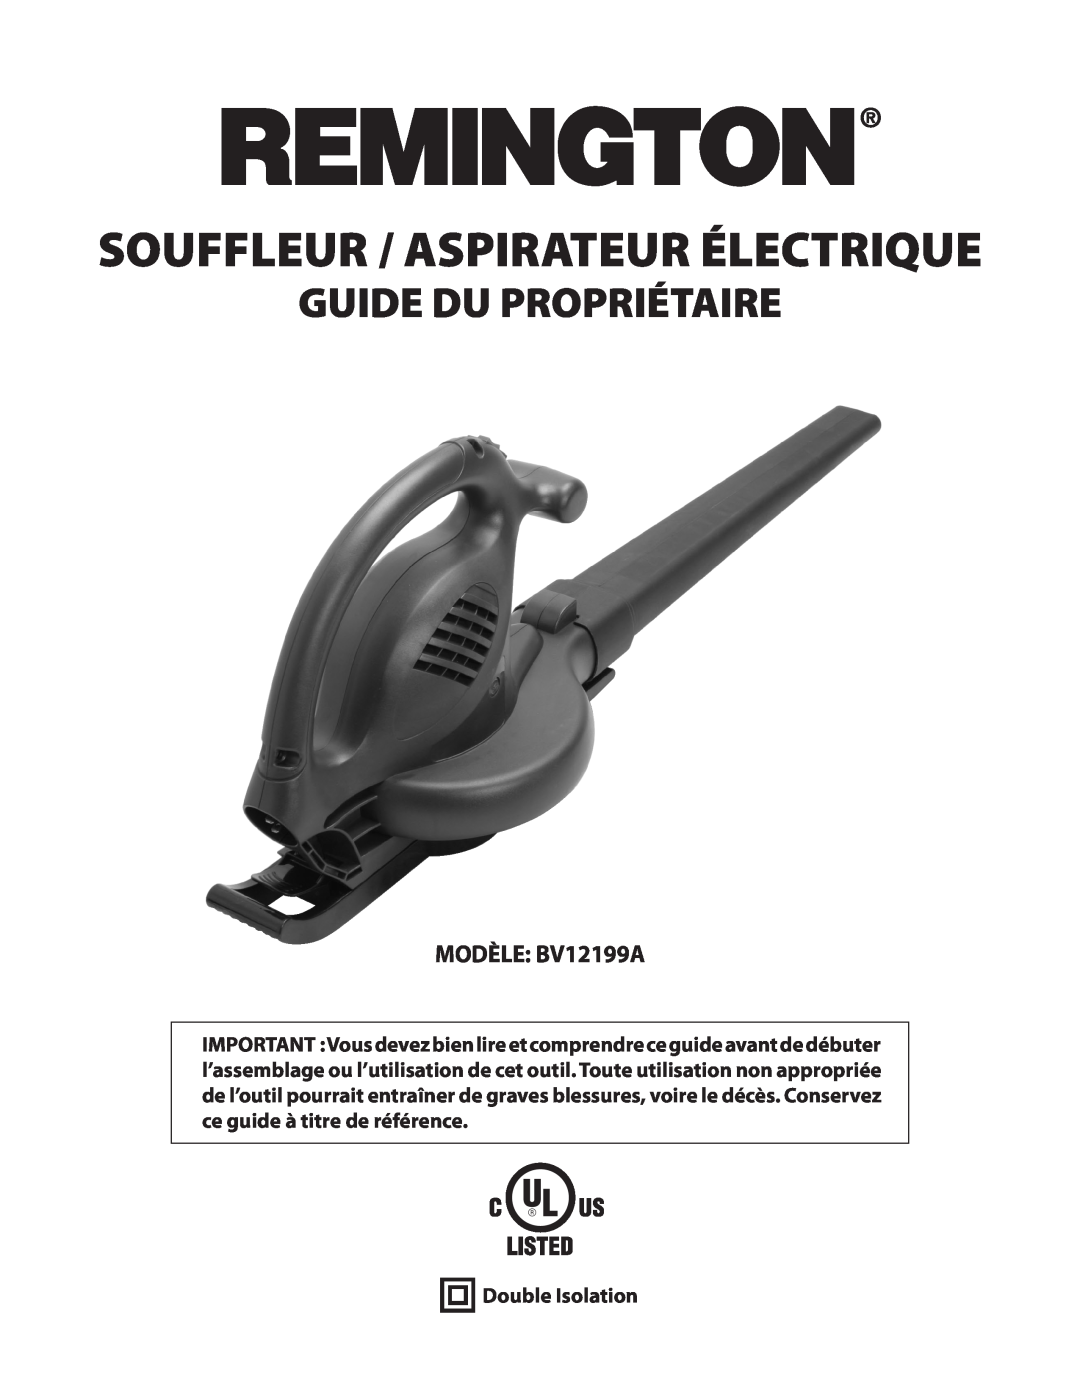 Remington owner manual Guide Du Propriétaire, MODÈLE BV12199A, Double Isolation, Souffleur / Aspirateur Électrique 